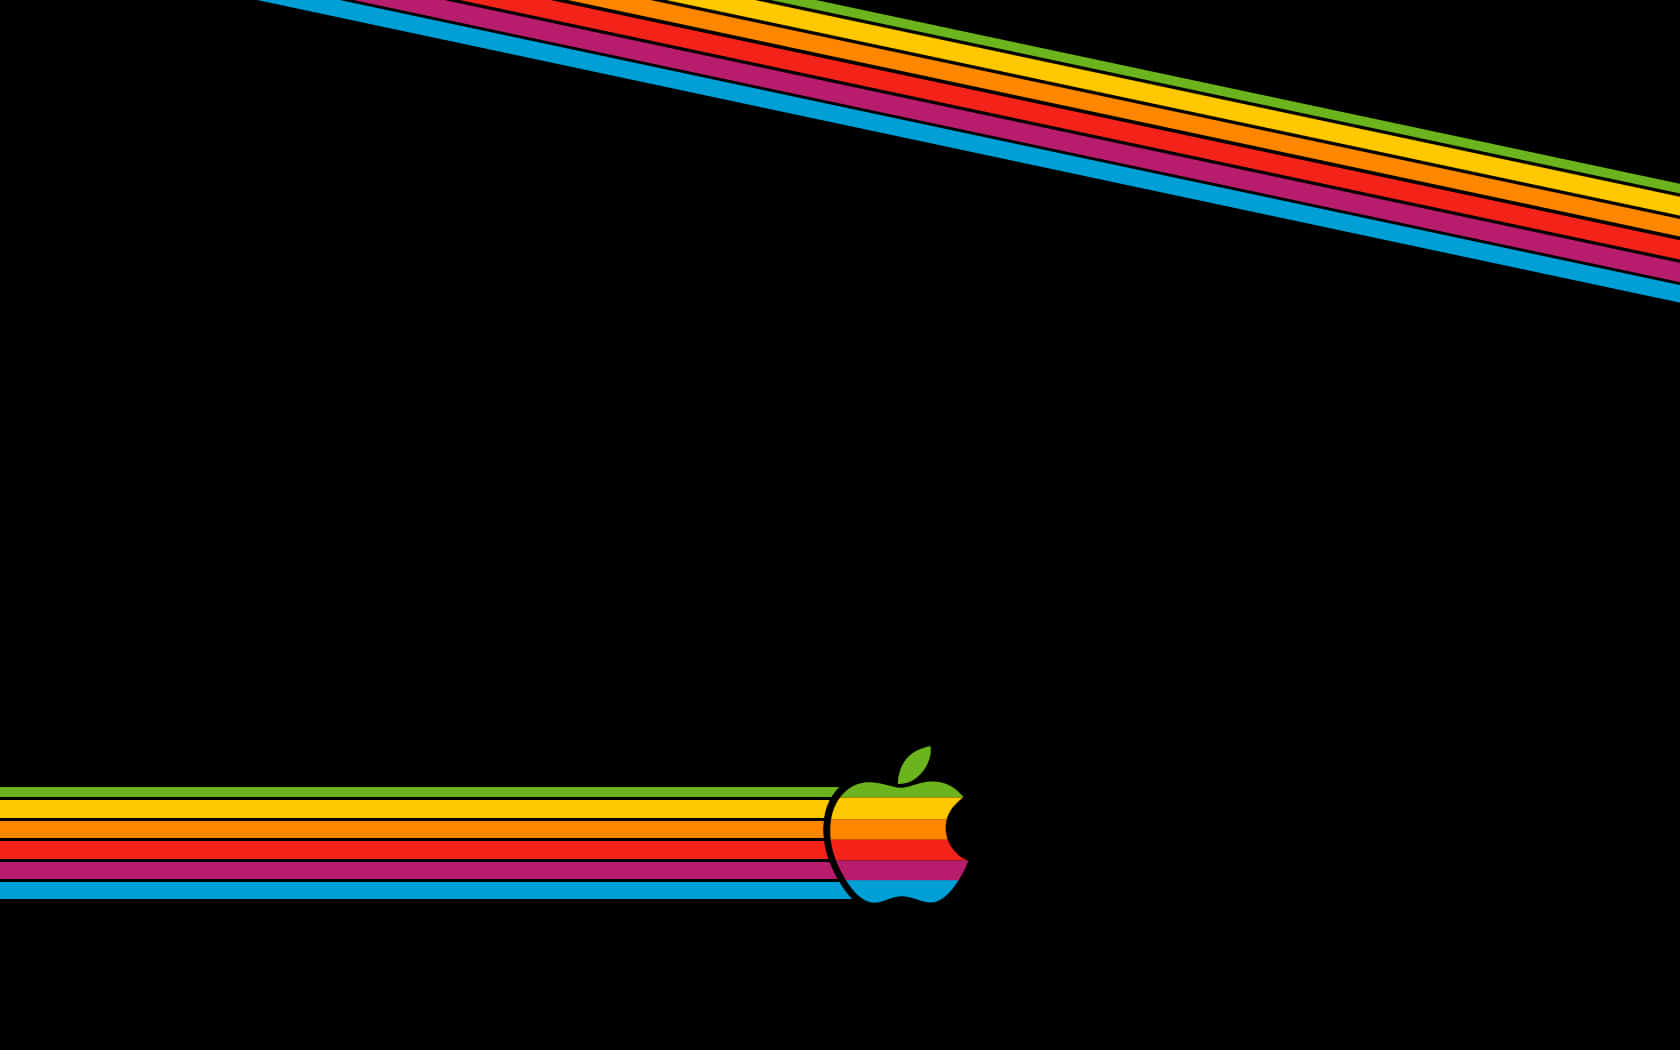 Retro Apple Wallpaper I by ediskrad-studios on DeviantArt